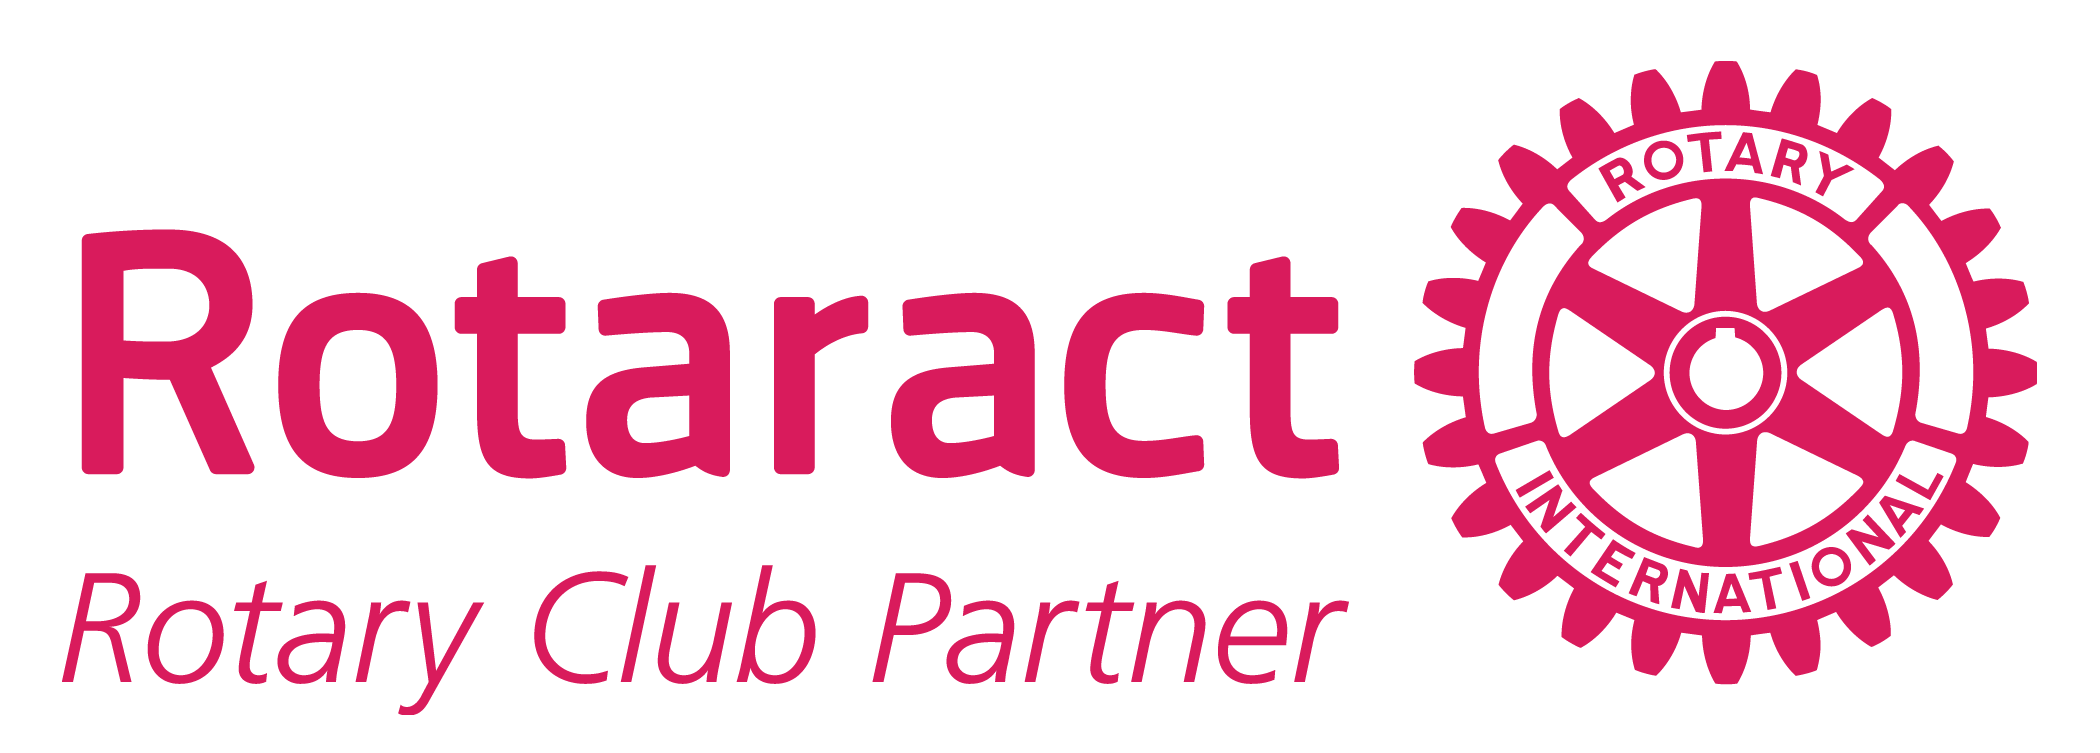 New-Rotaract-Logo